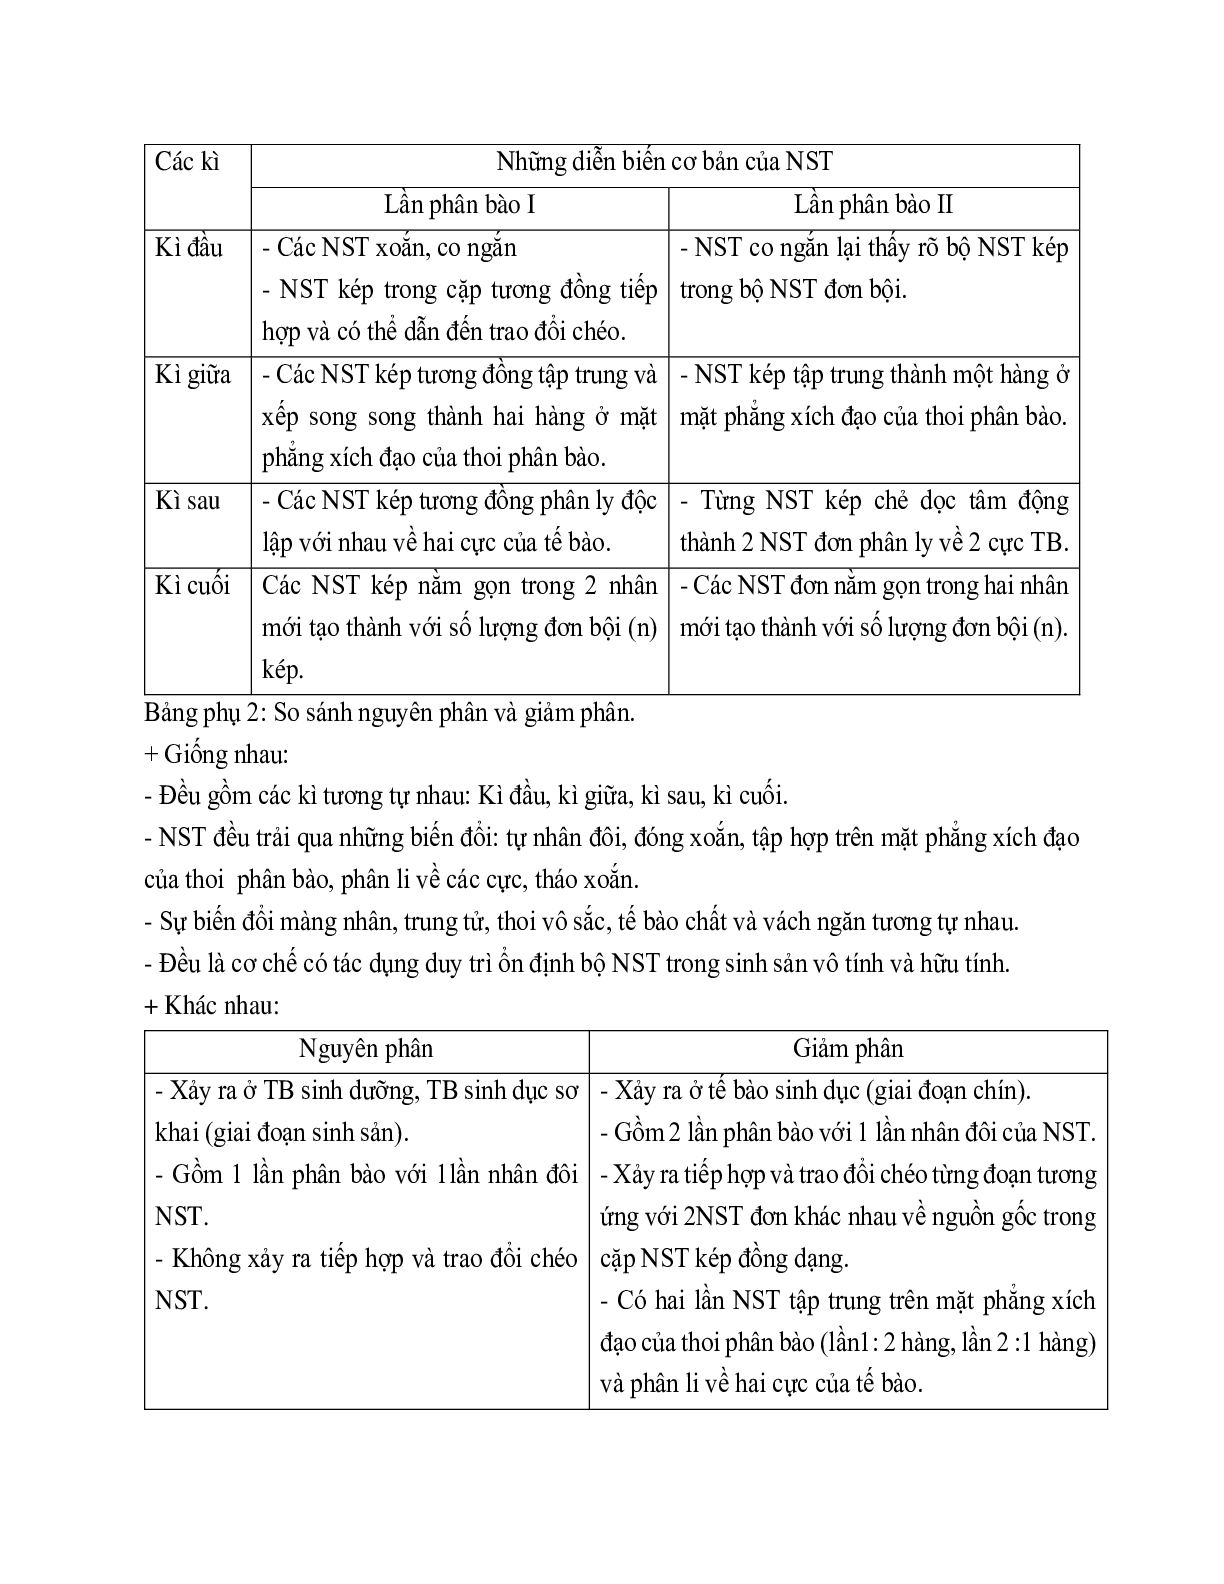 Giáo án Sinh học 9 Bài 10: Giảm phân mới nhất (trang 2)